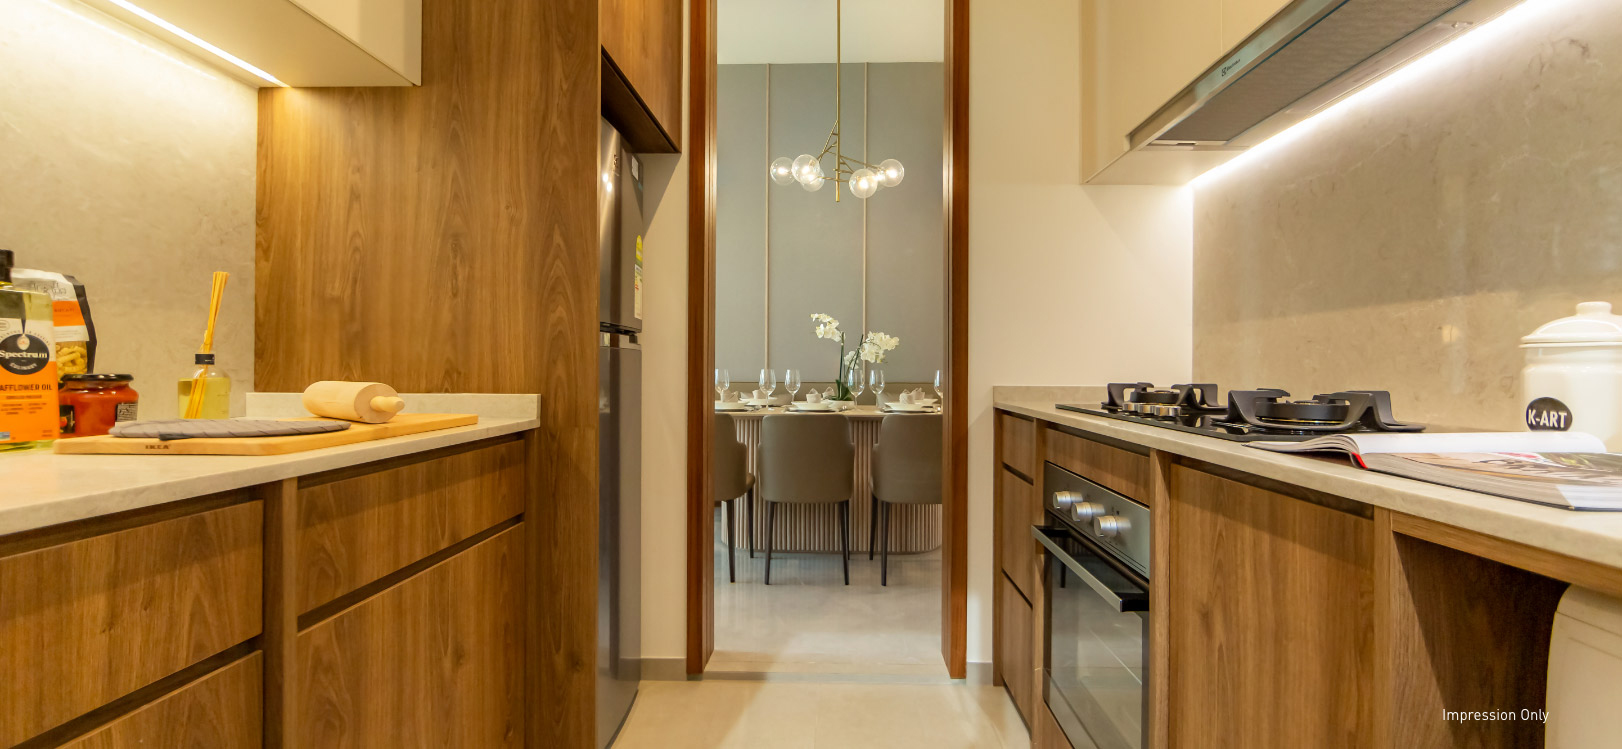 Olloi Condo kitchen interior design